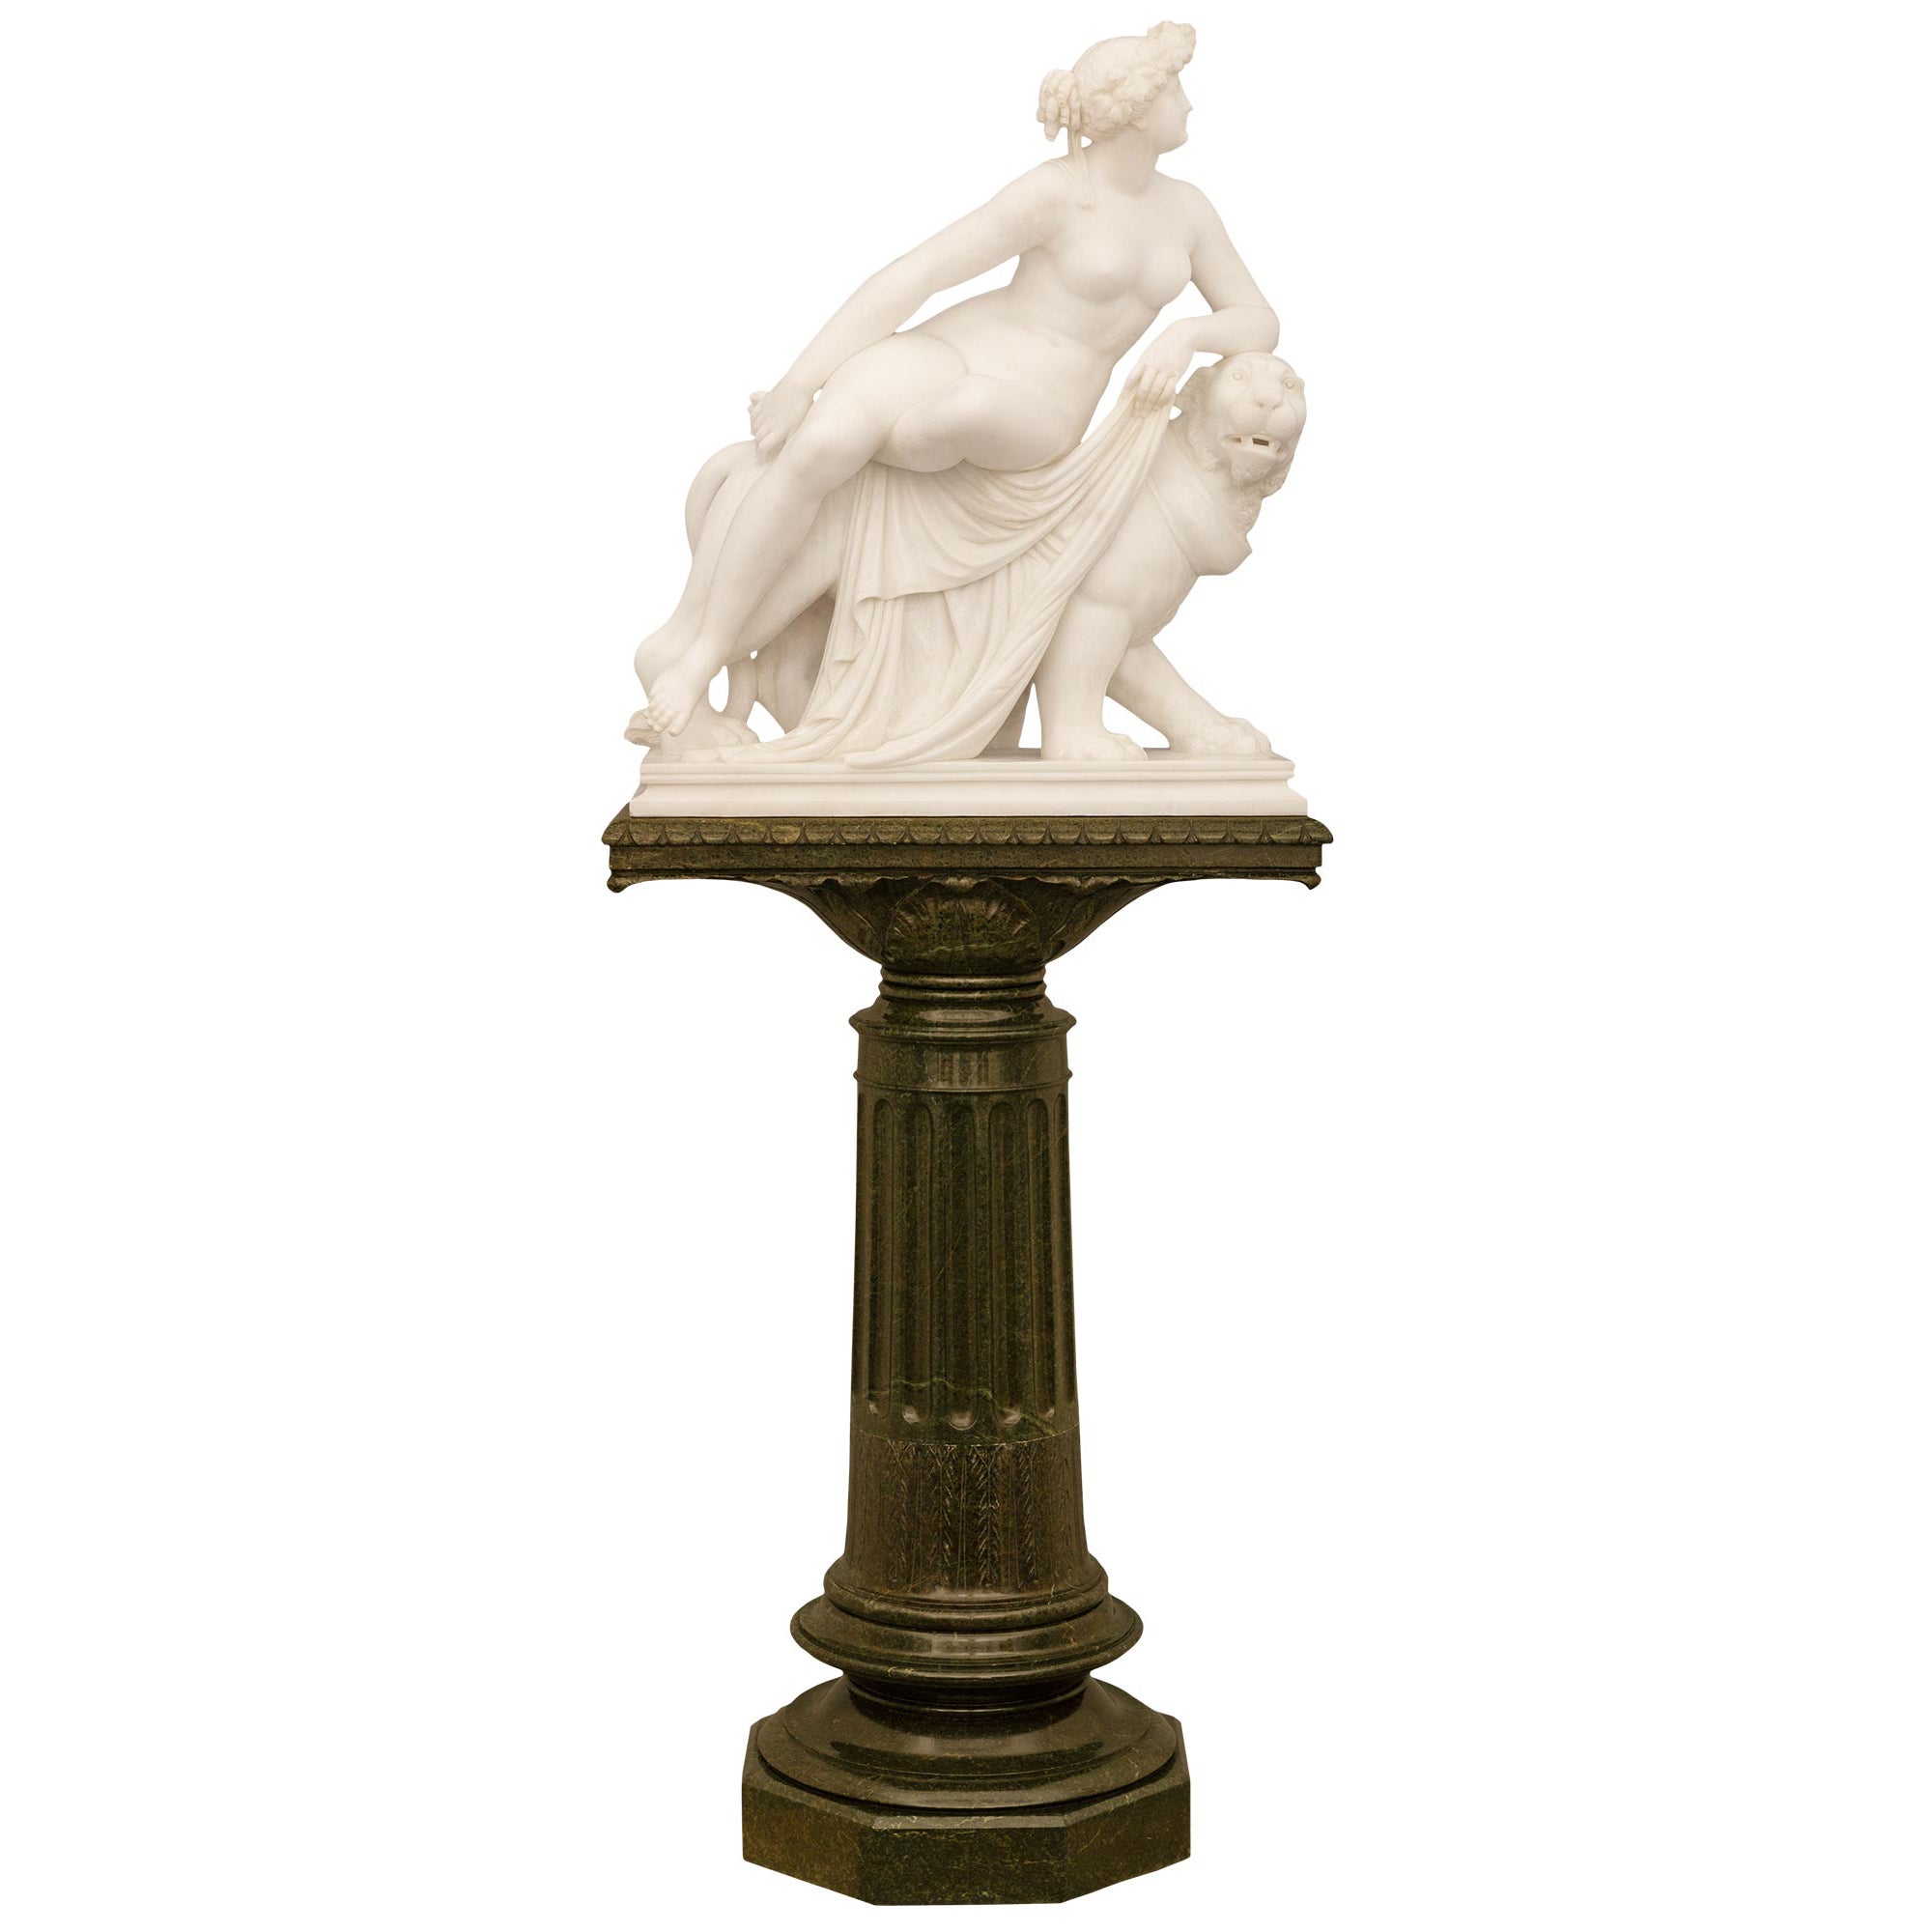 Statue d'Ariane de style néoclassique italien du 19ème siècle signée et signée F. Vichi